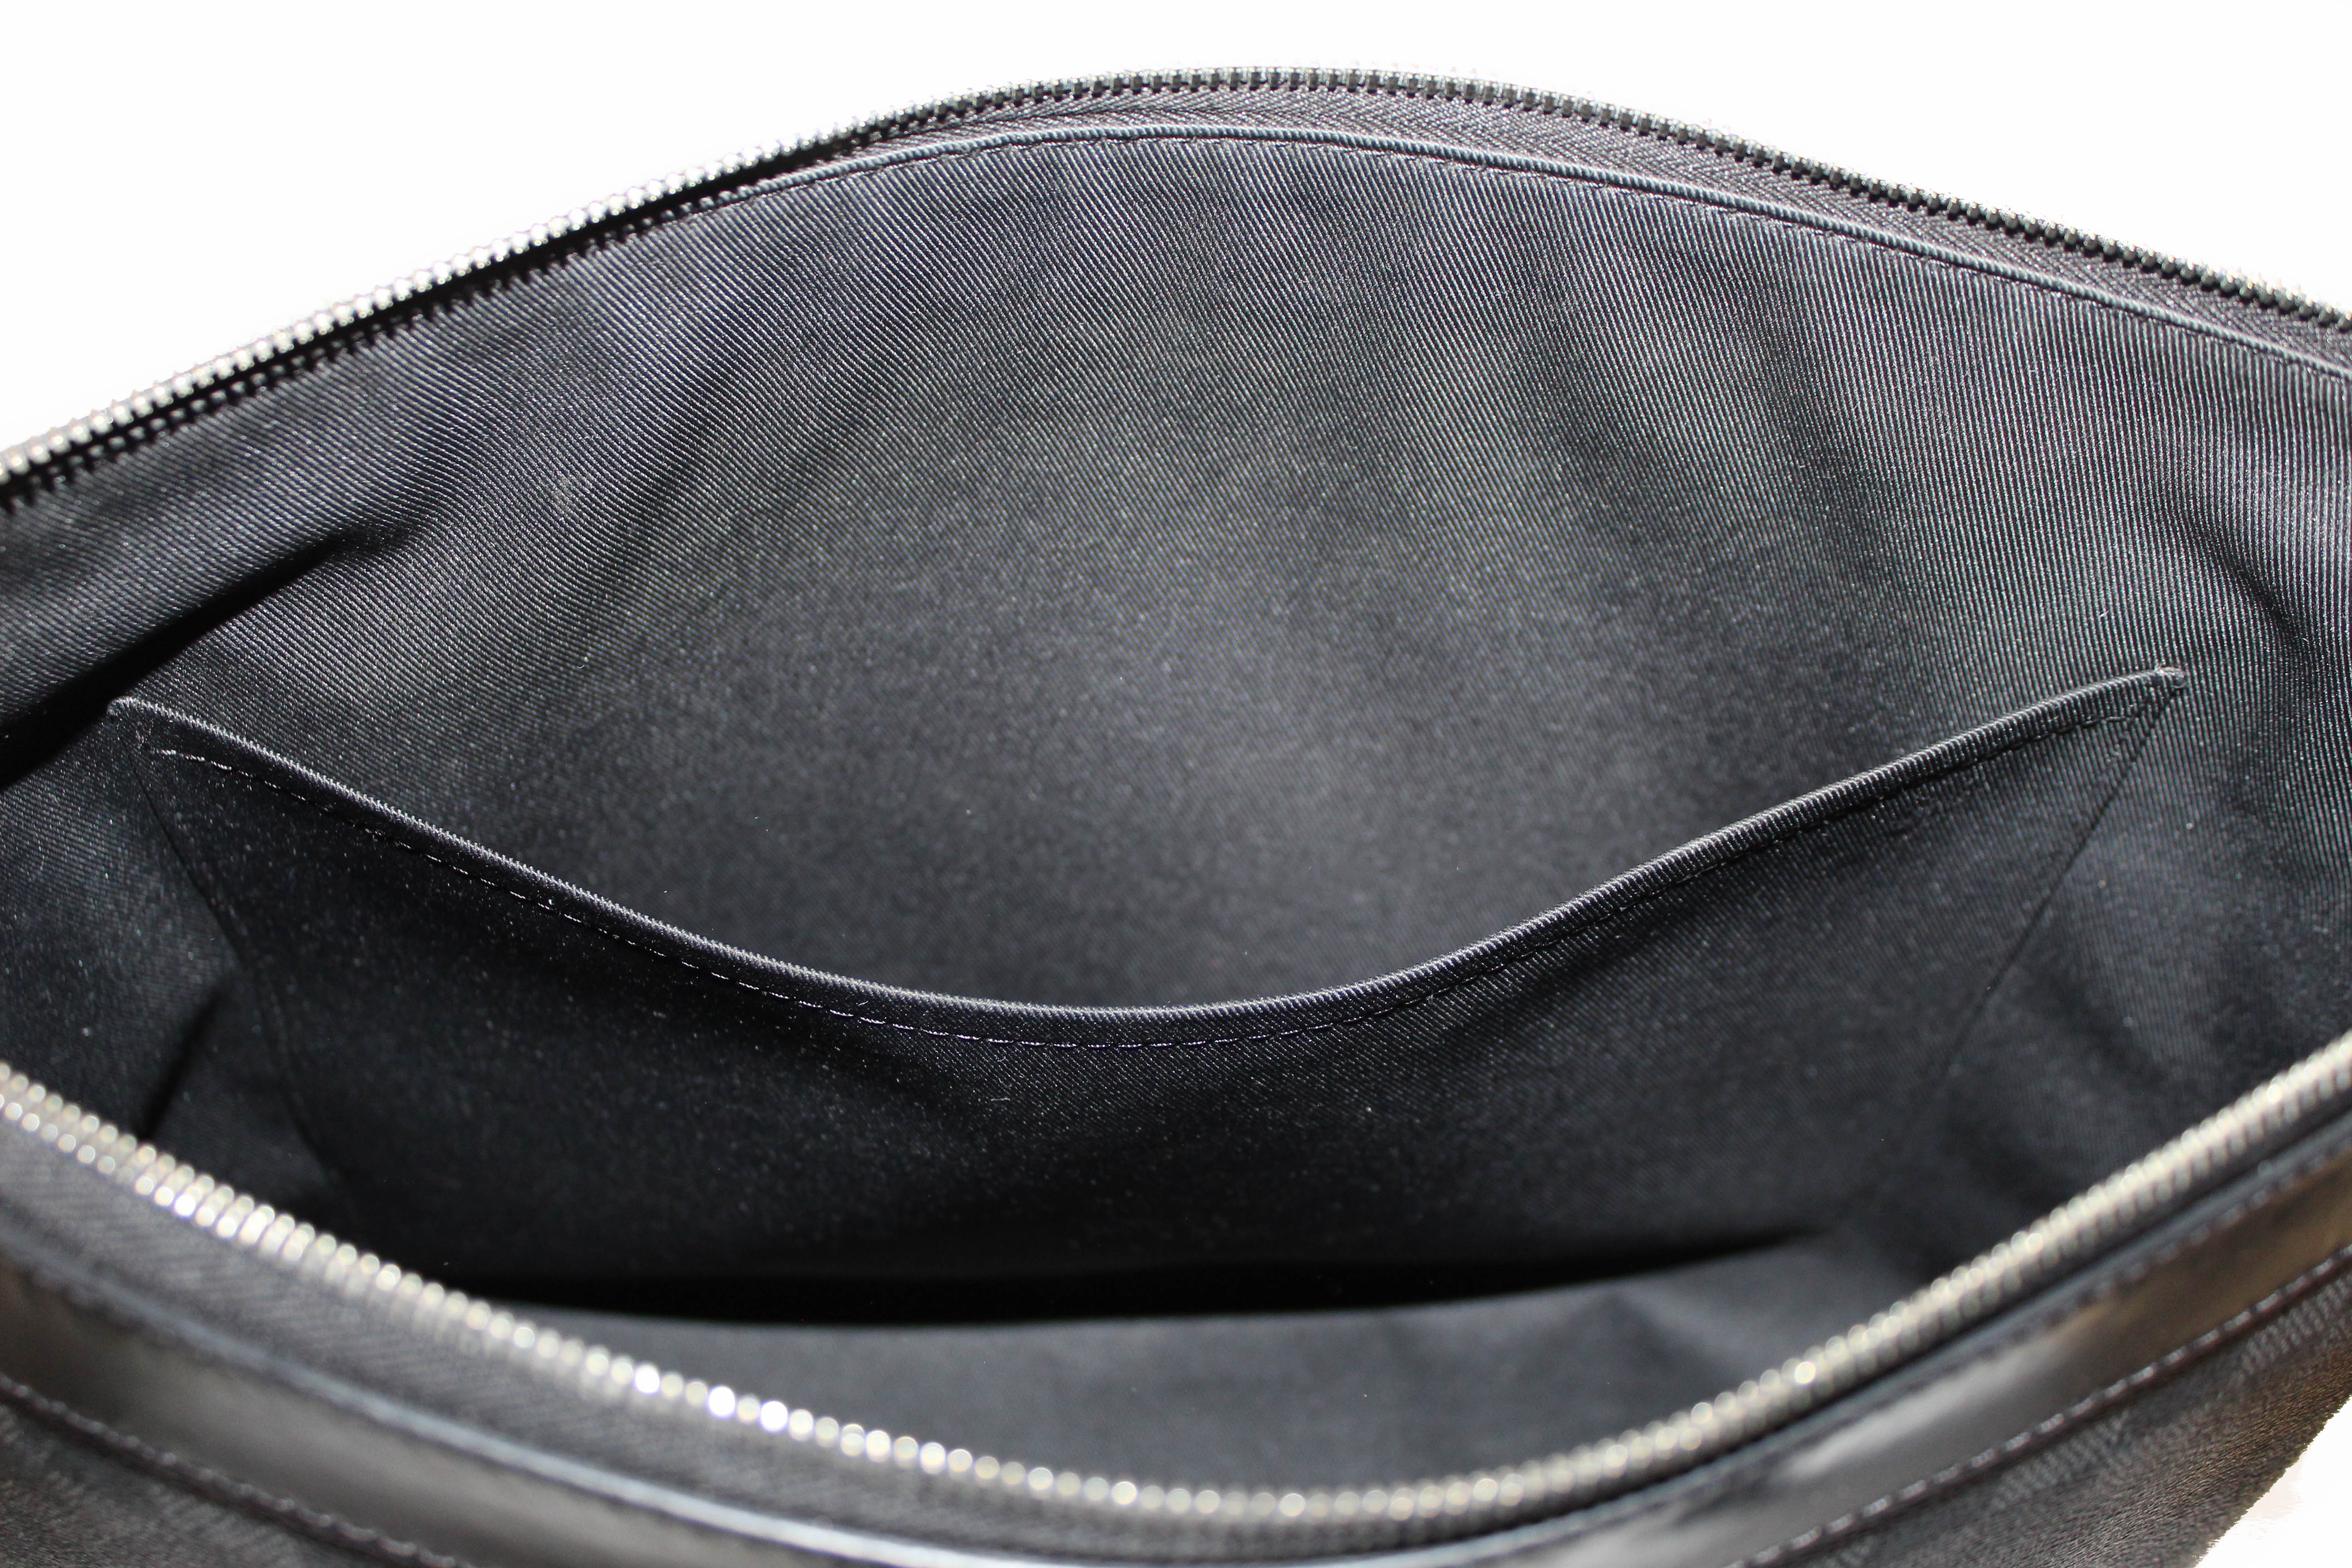 Louis Vuitton LV Men Scott Messenger Damier Graphite N50018 Shoulder Bag -  LULUX